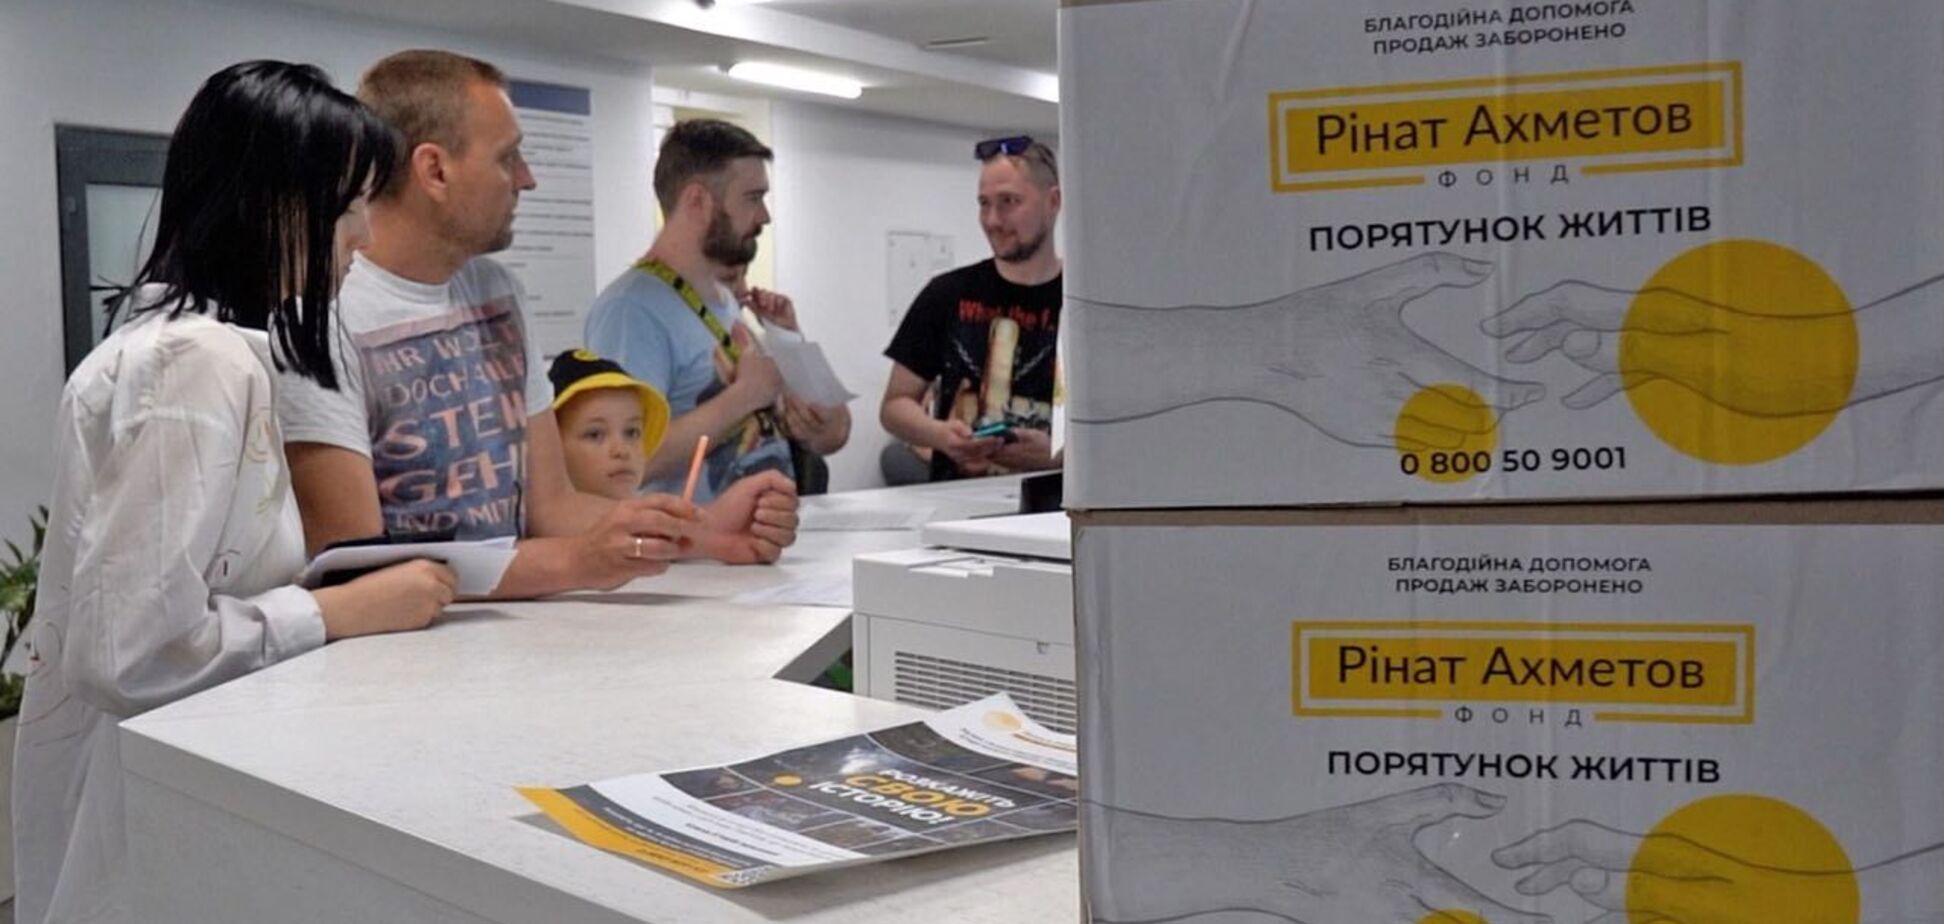 Фонд Рината Ахметова передал в Дарницкий район Киева партию гумпомощи для переселенцев